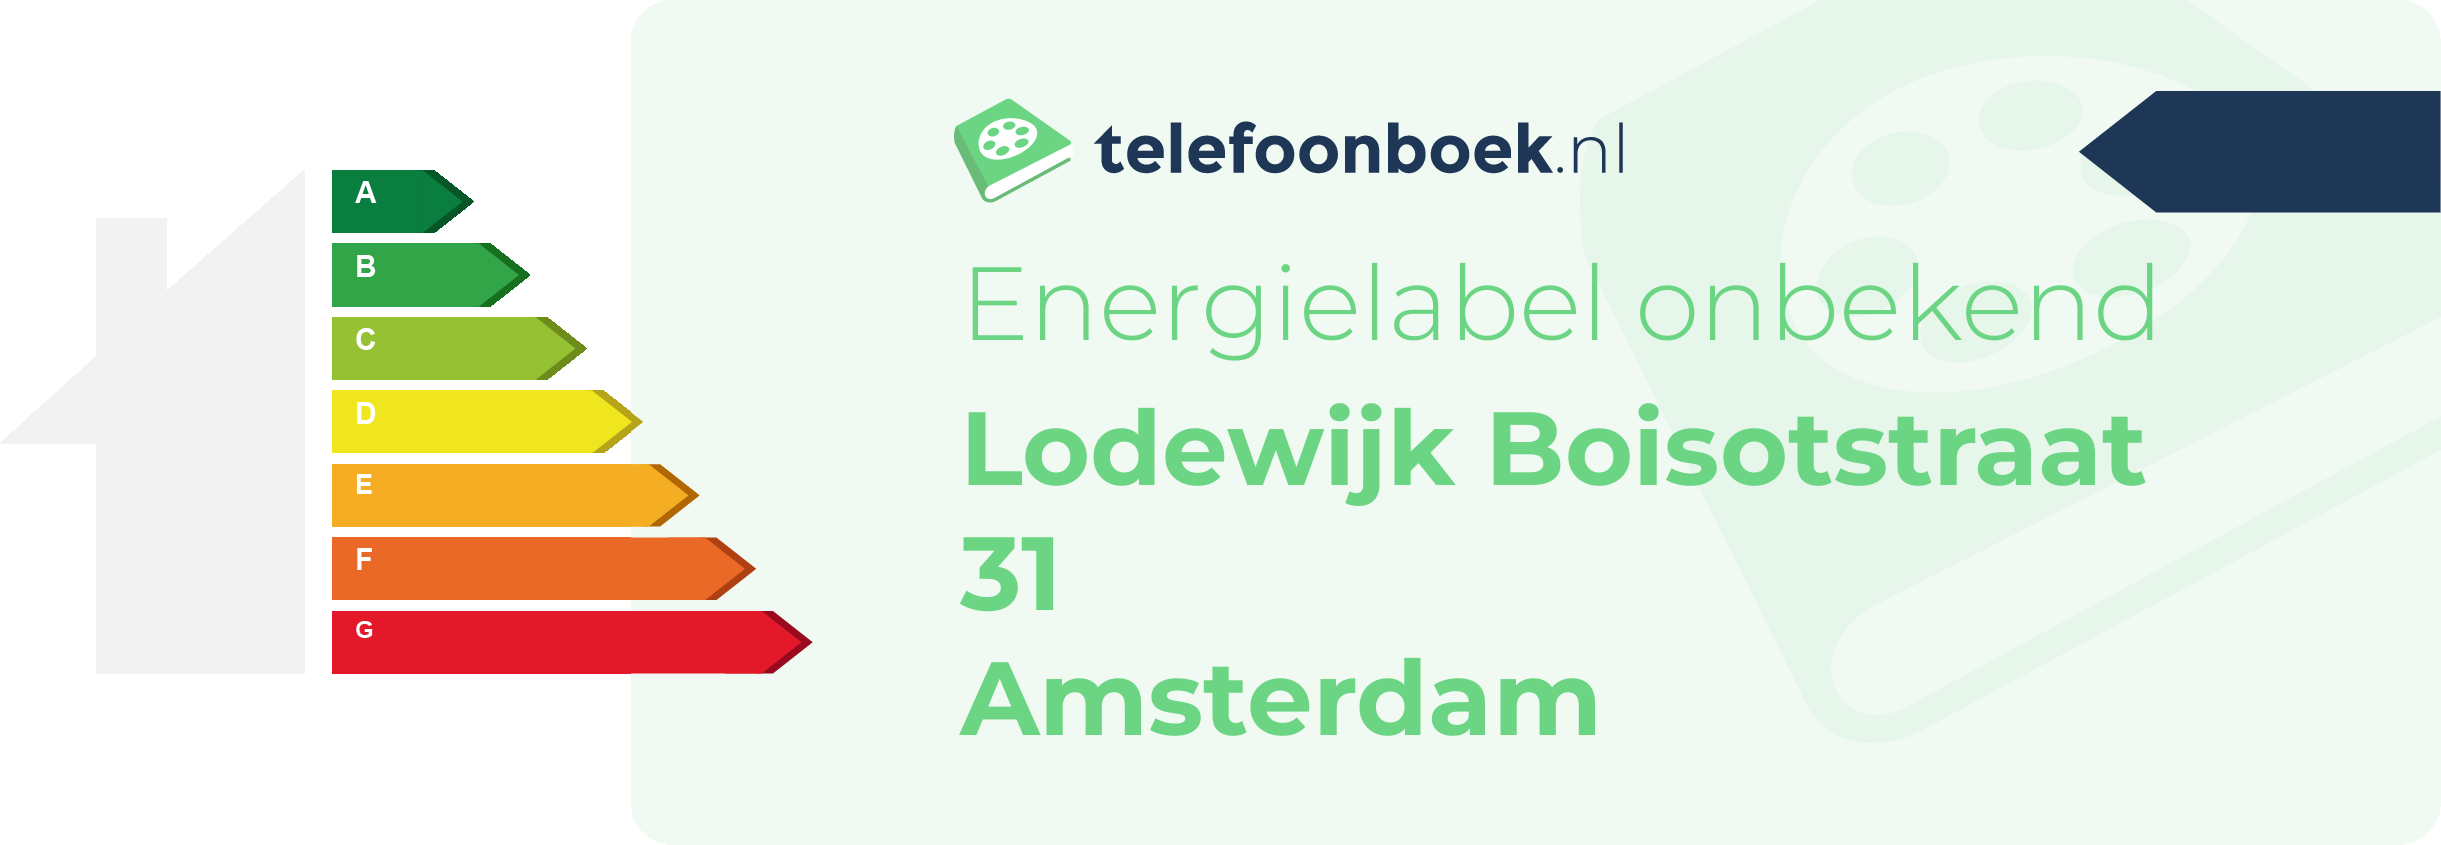 Energielabel Lodewijk Boisotstraat 31 Amsterdam